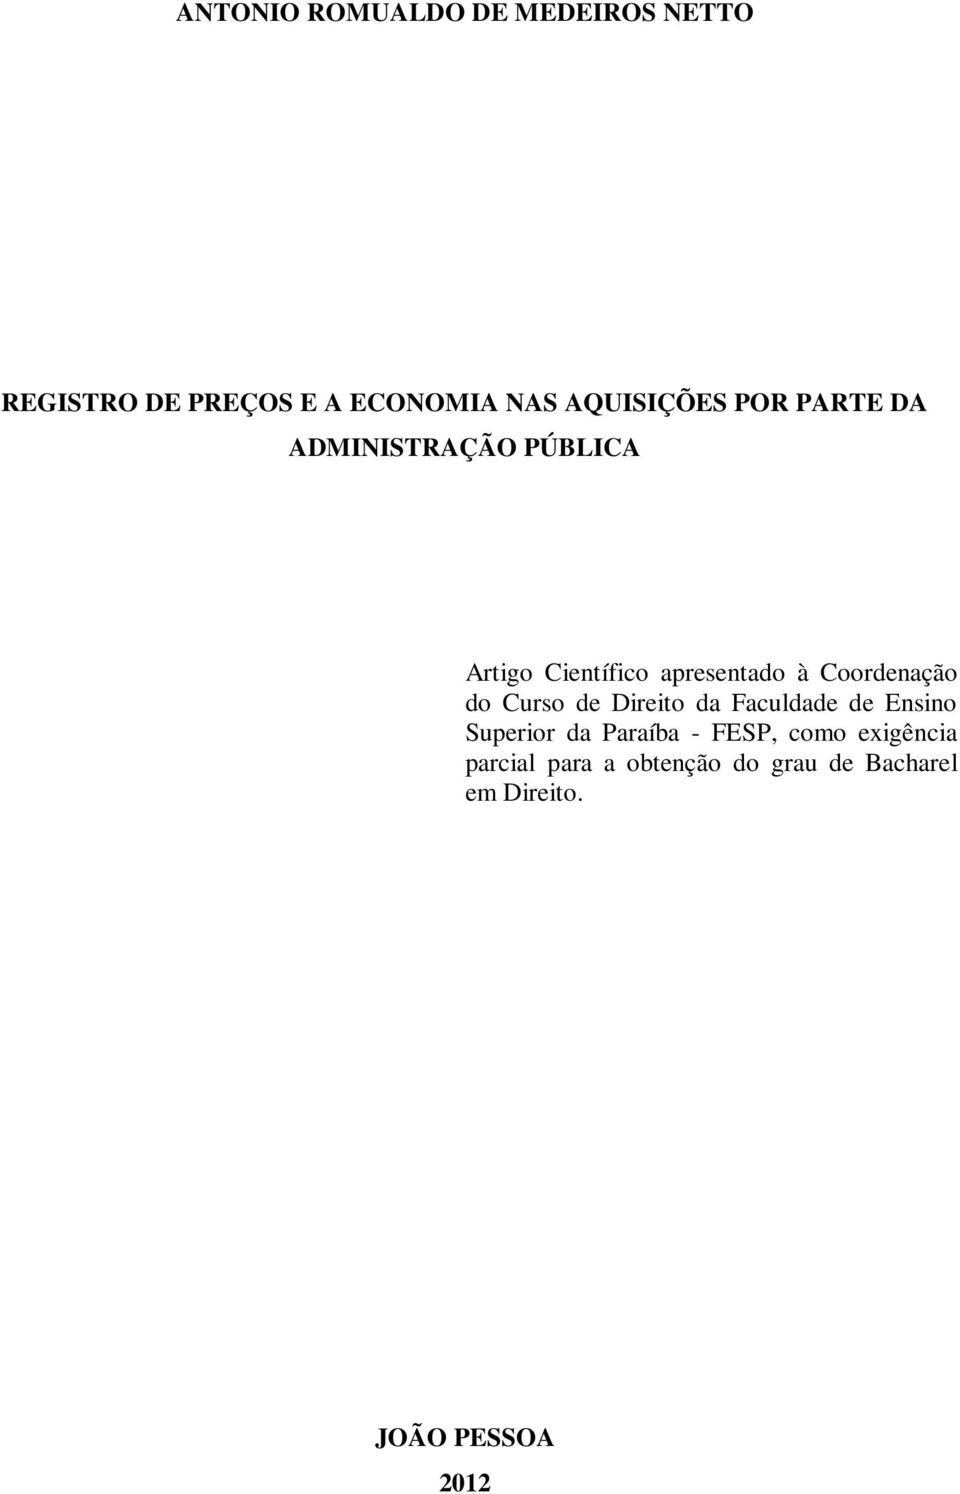 Coordenação do Curso de Direito da Faculdade de Ensino Superior da Paraíba -